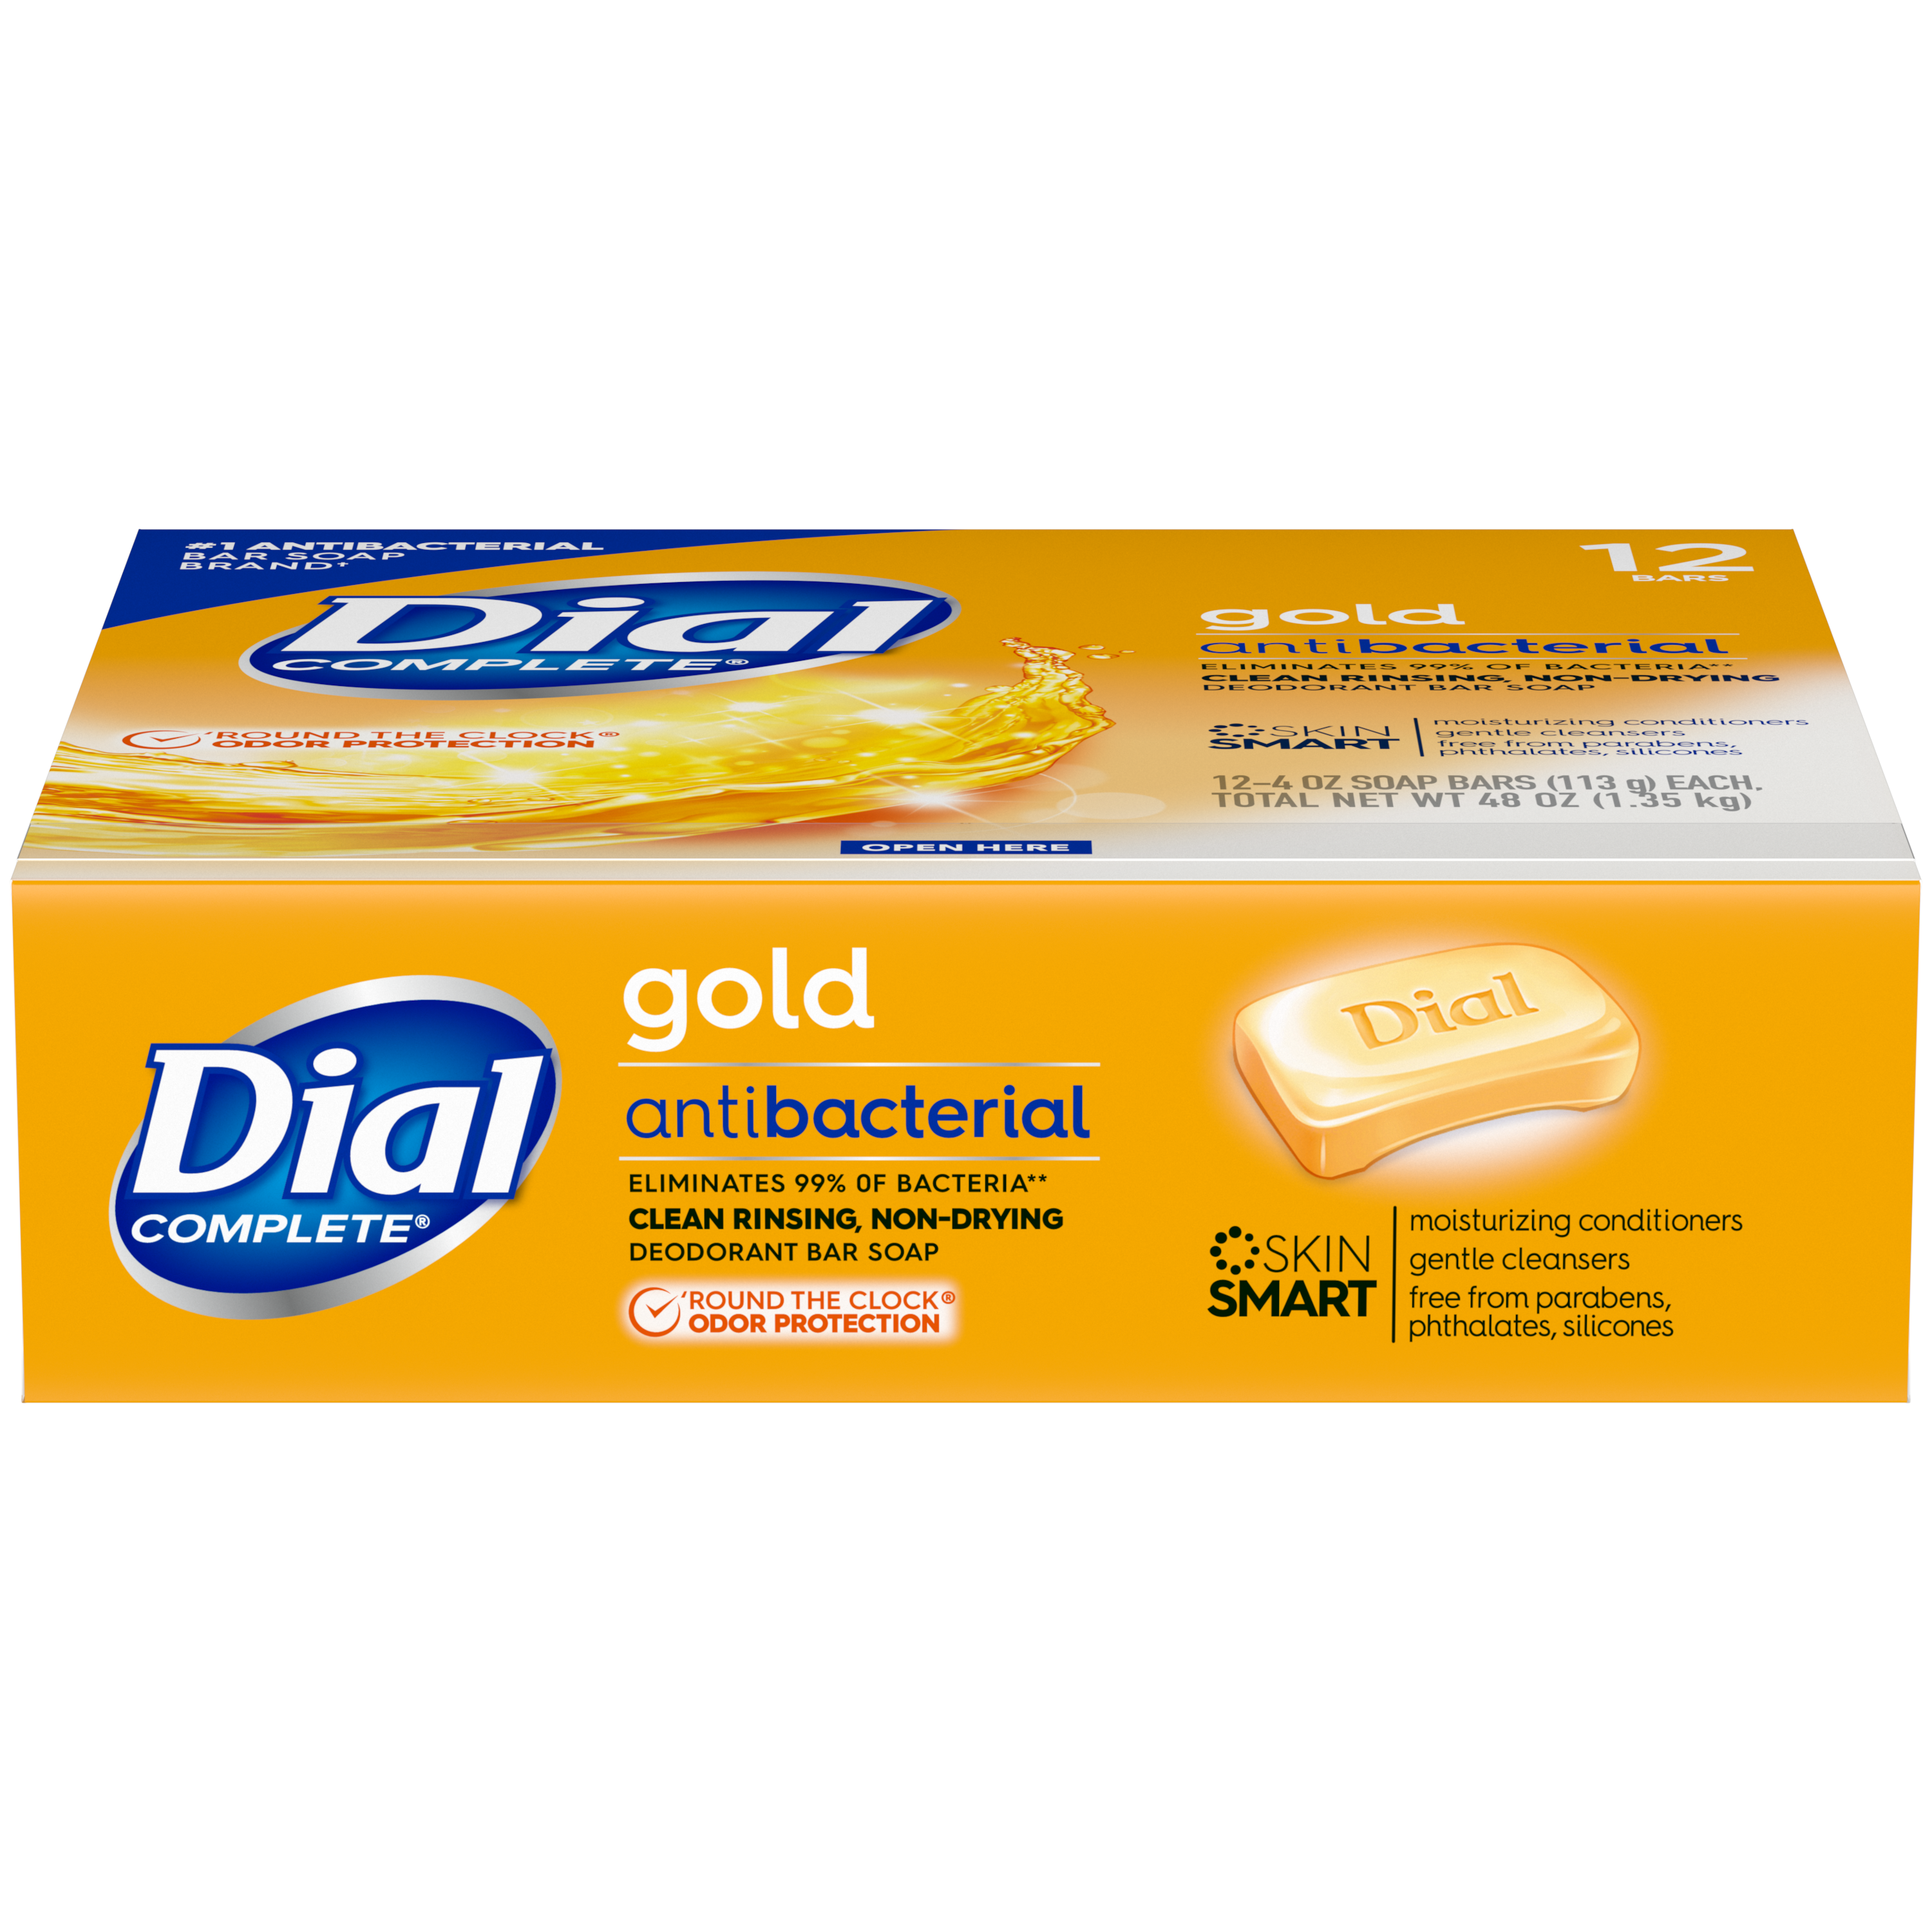 Dial Antibacterial Deodorant Bar Soap, Advanced Clean, Gold, 4 oz, 12 Bars - image 4 of 10